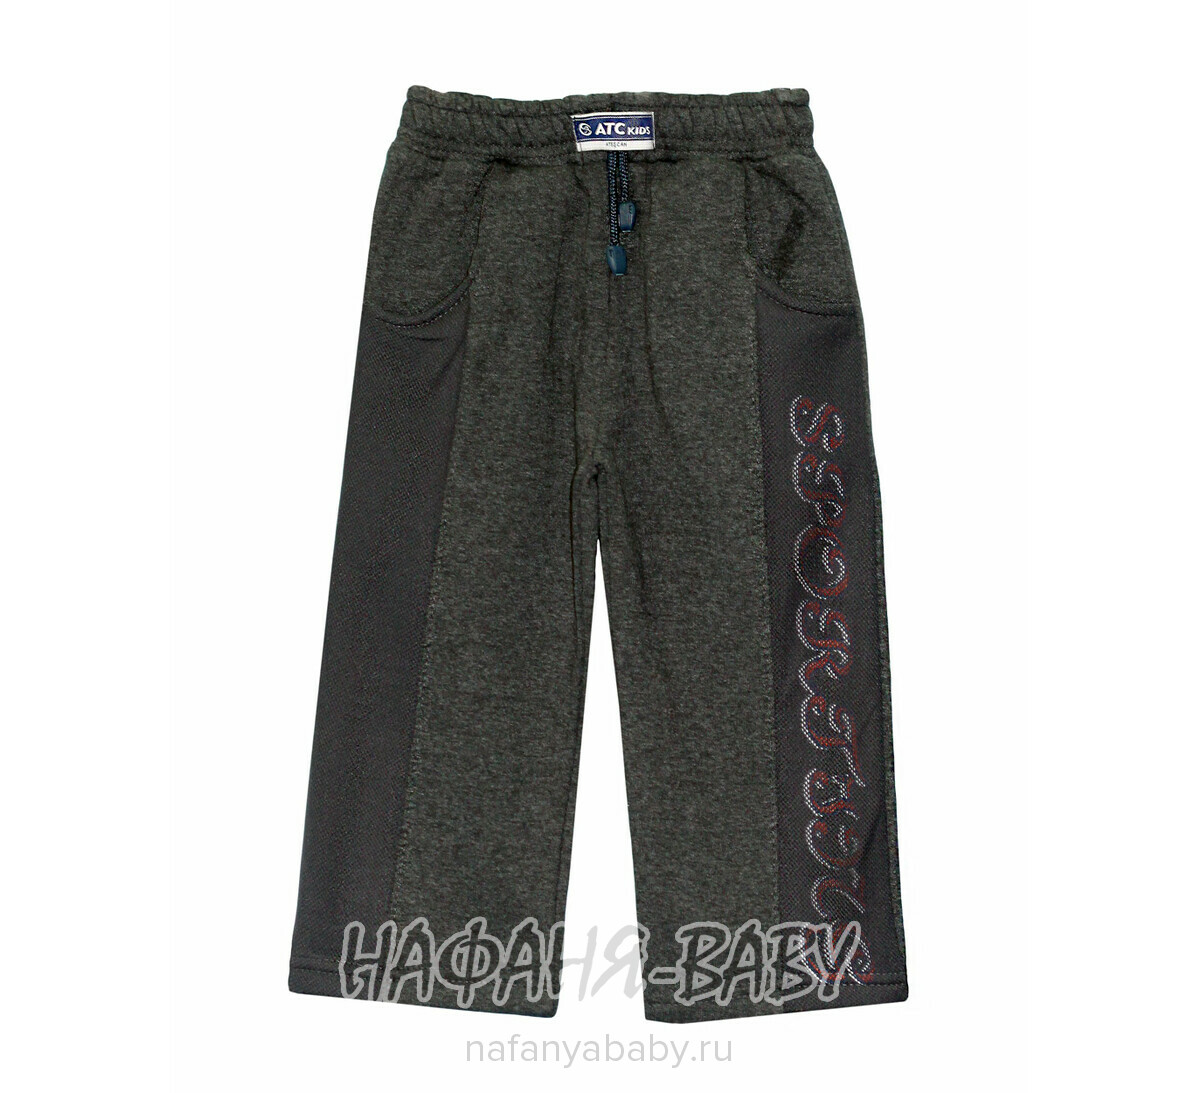 Детские брюки ATС, купить в интернет магазине Нафаня. арт: 430.